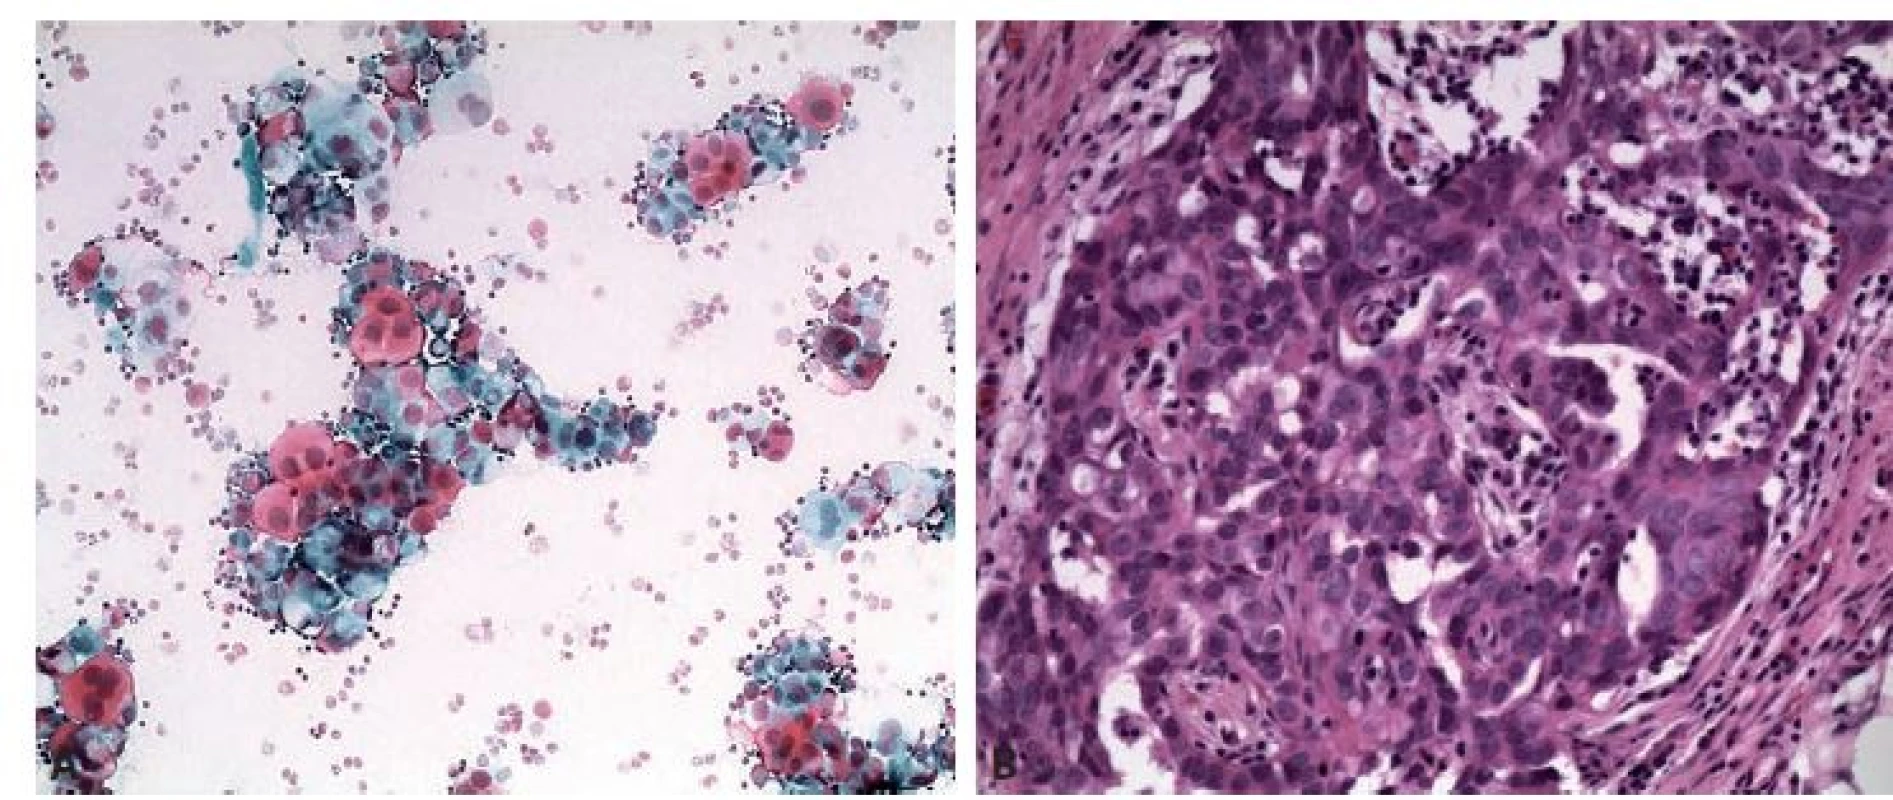 Serózní karcinom high grade. A: Trsy atypických buněk v mírně zánětlivém pozadí. Polychrom 200x. B: Histologicky nález potvrzen.